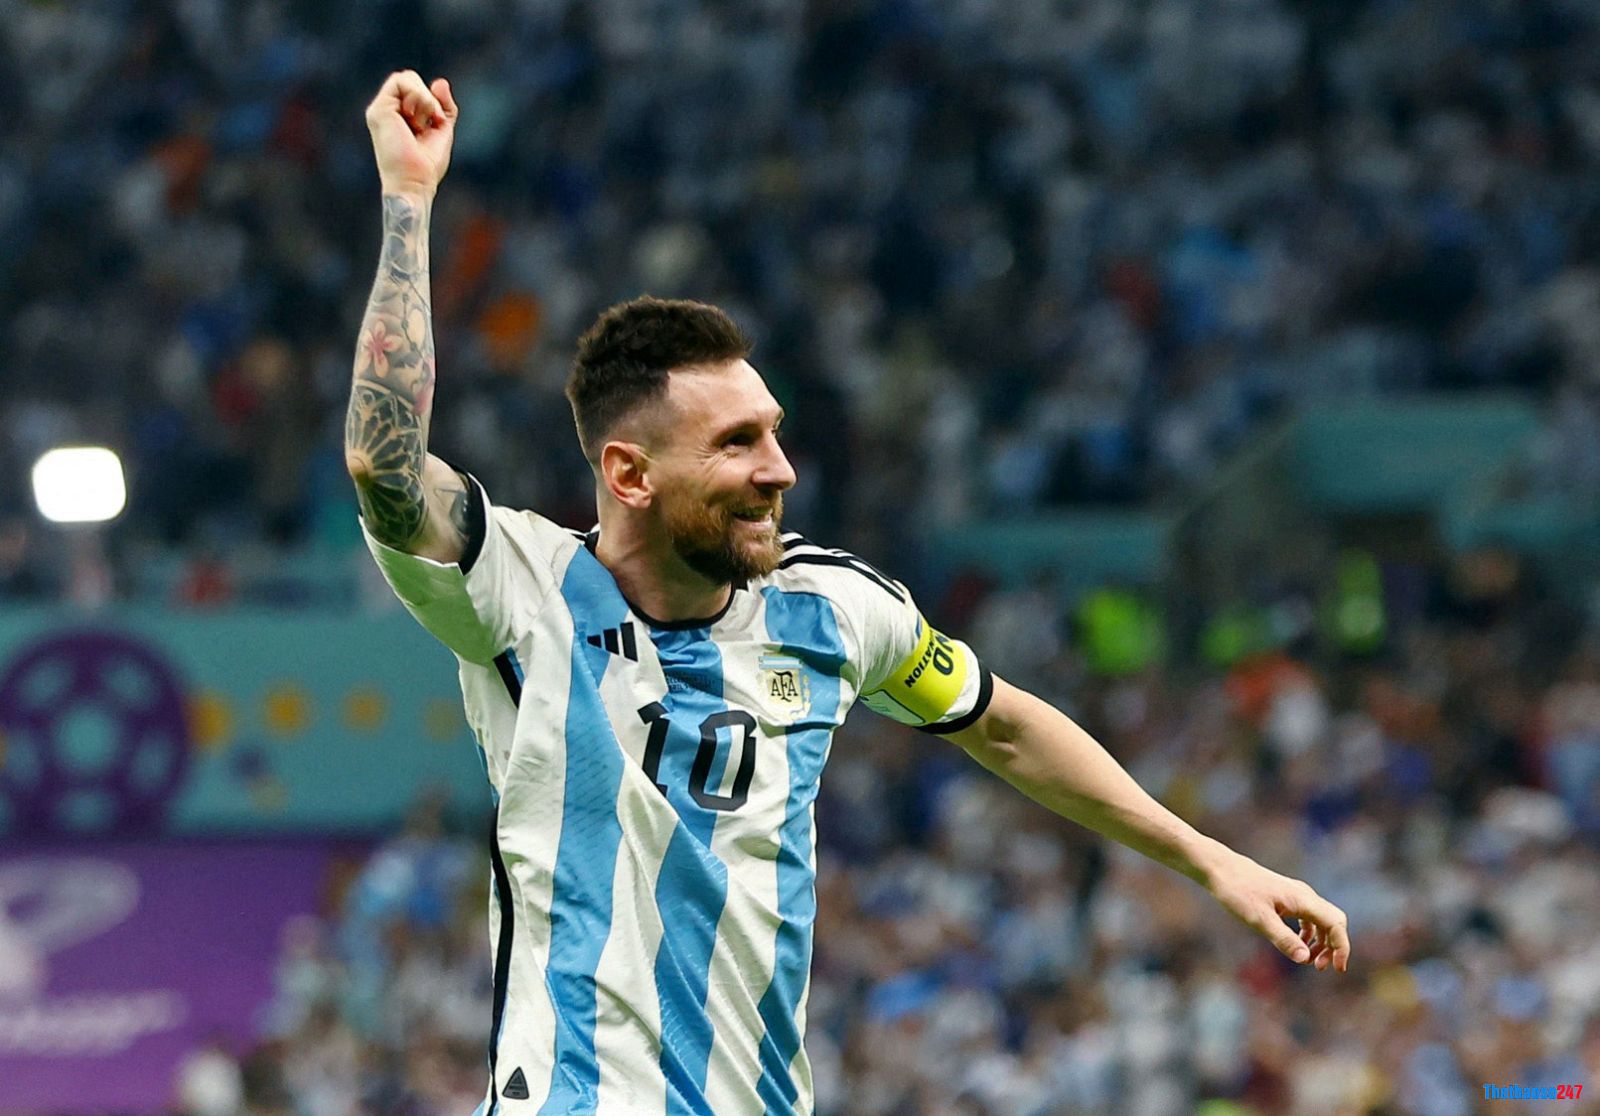 Messi, Argentina